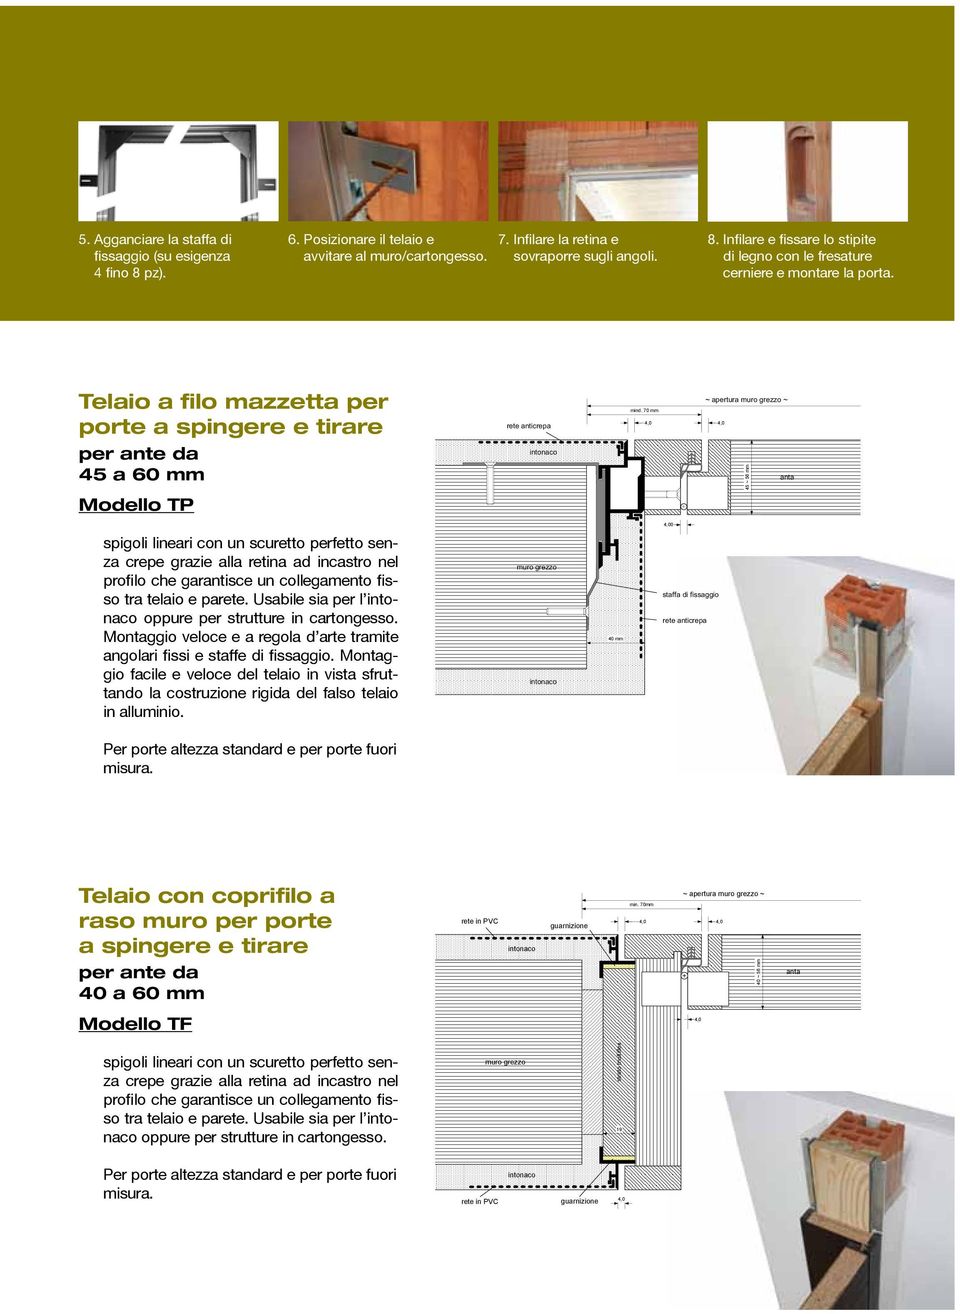 Montaggio facile e veloce del telaio in vista sfruttando la costruzione rigida del falso telaio in alluminio. muro grezzo staffa di fissaggio AGS-systems s.r.l. Drawing: profilotp Section Scale: 1:1 Date 10.